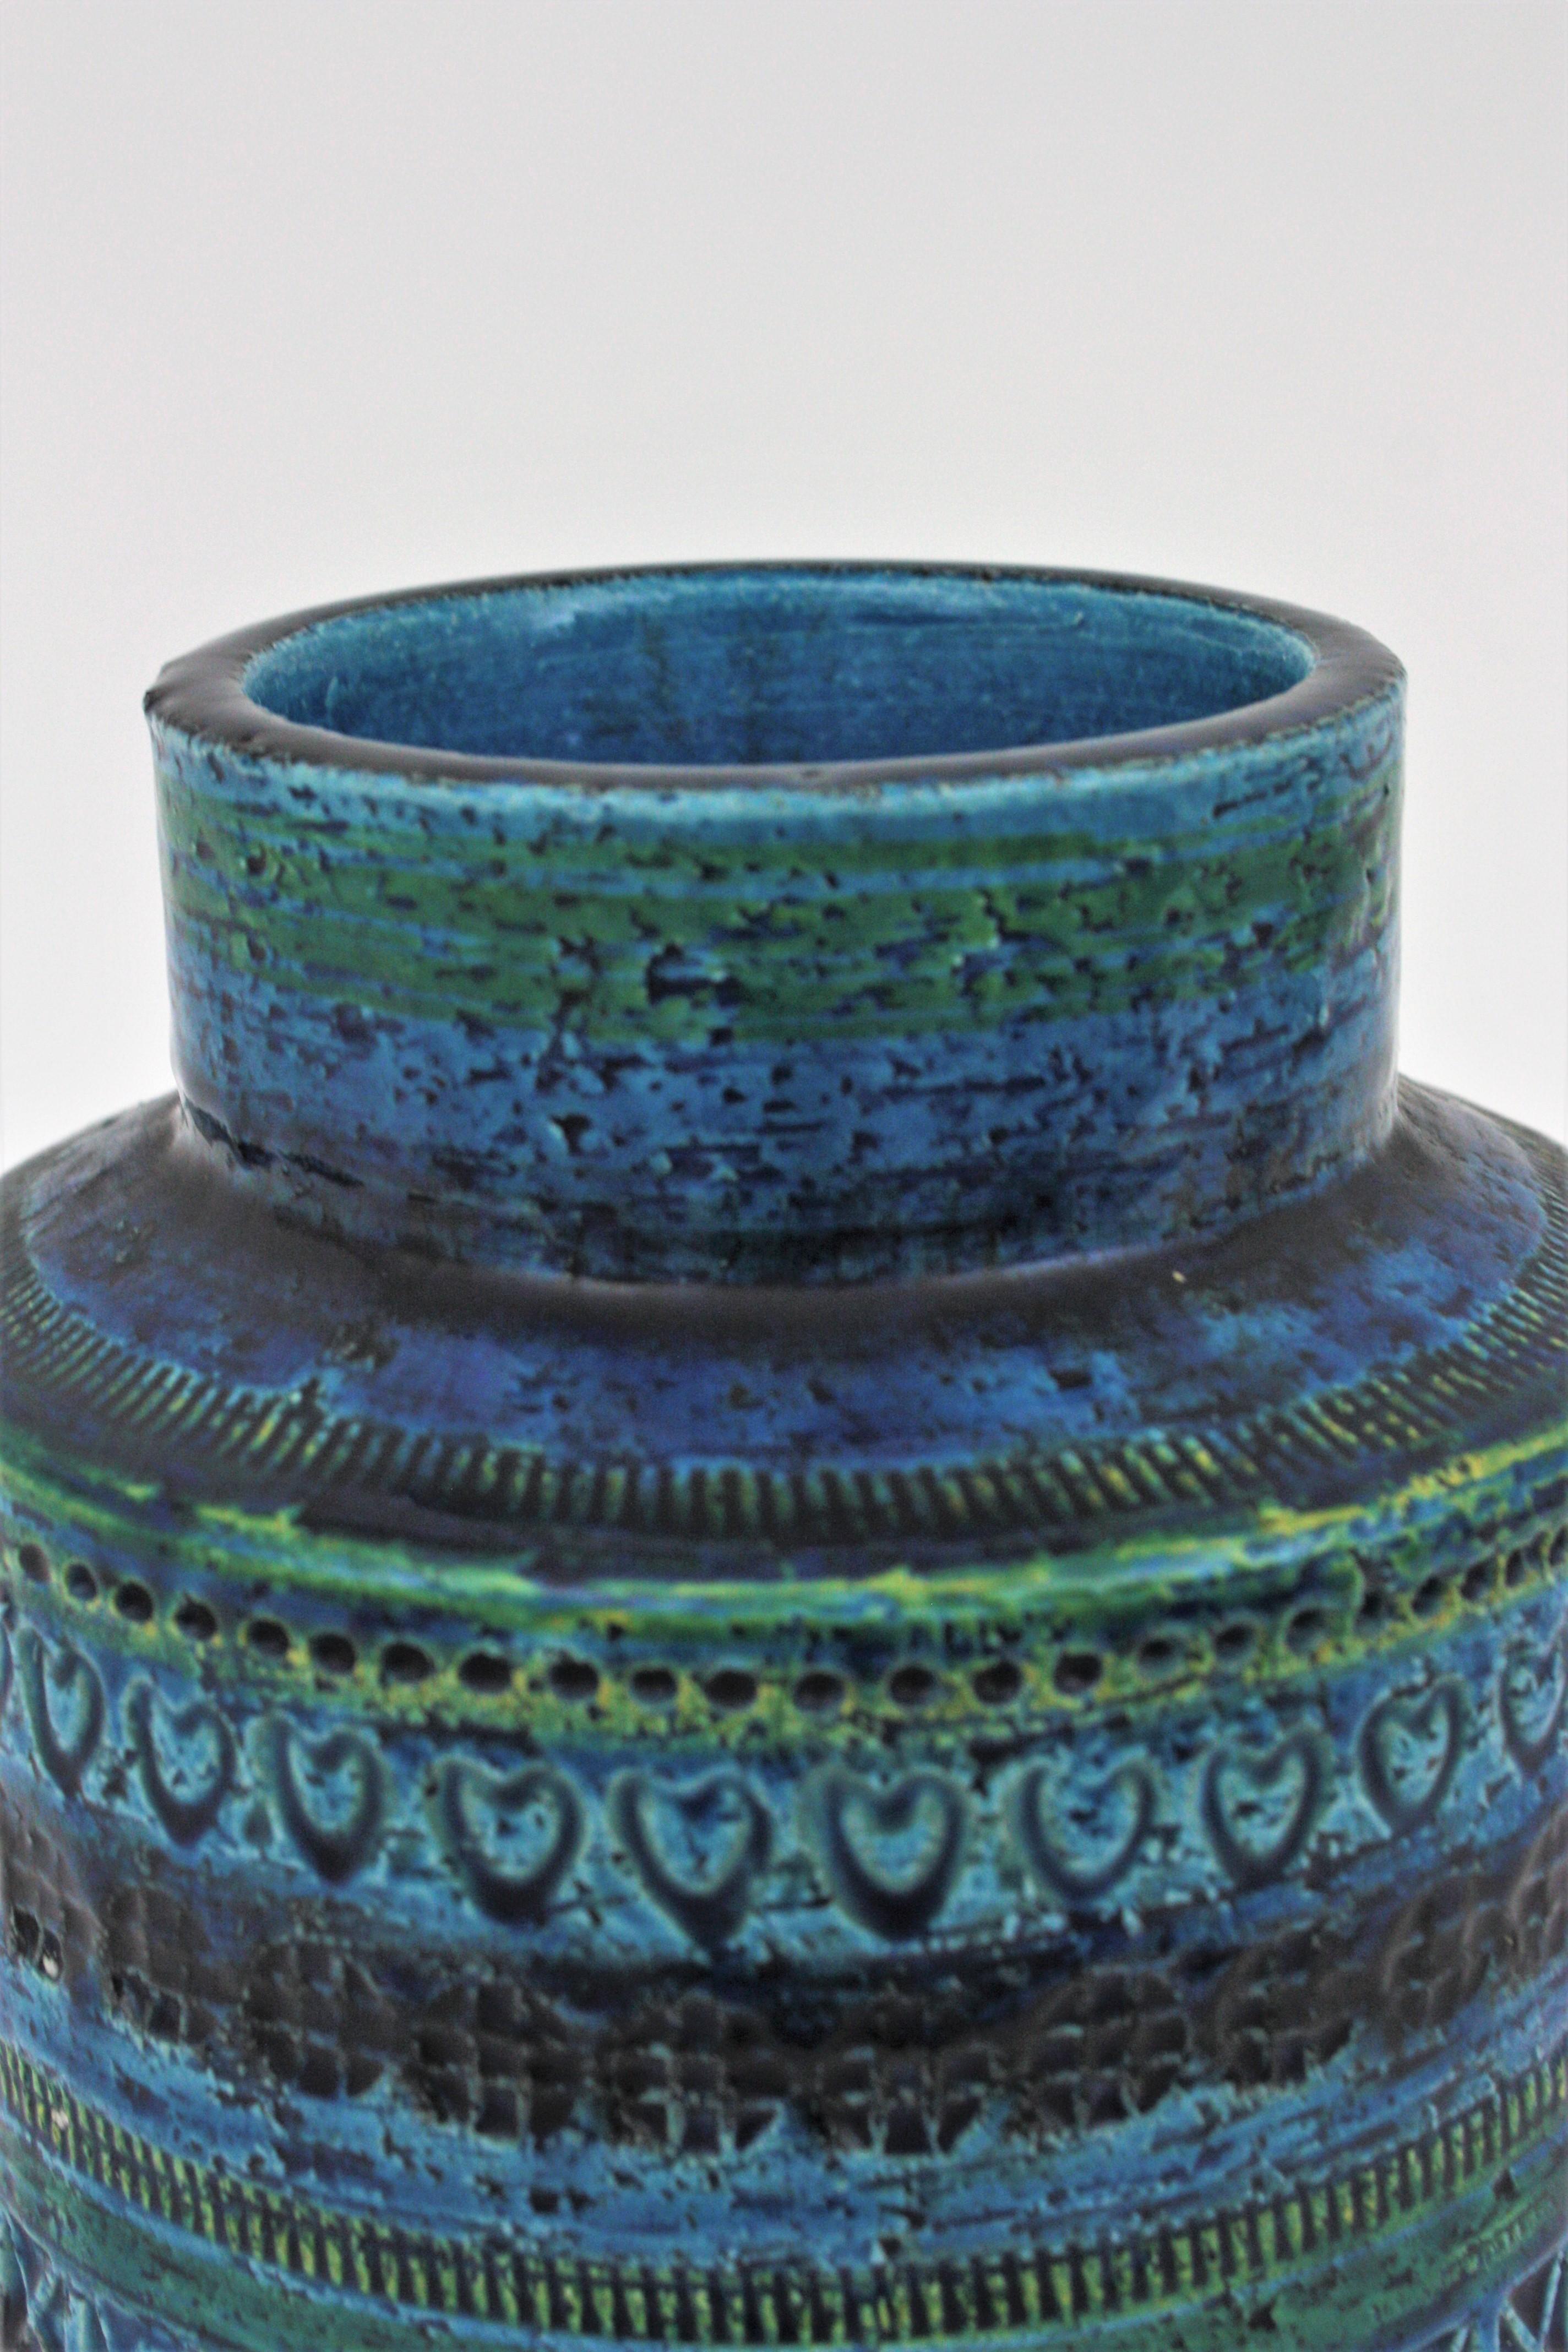 Bitossi Aldo Londi Rimini Blue Ceramic Vase on Sterling Silver Base, 1960s For Sale 1